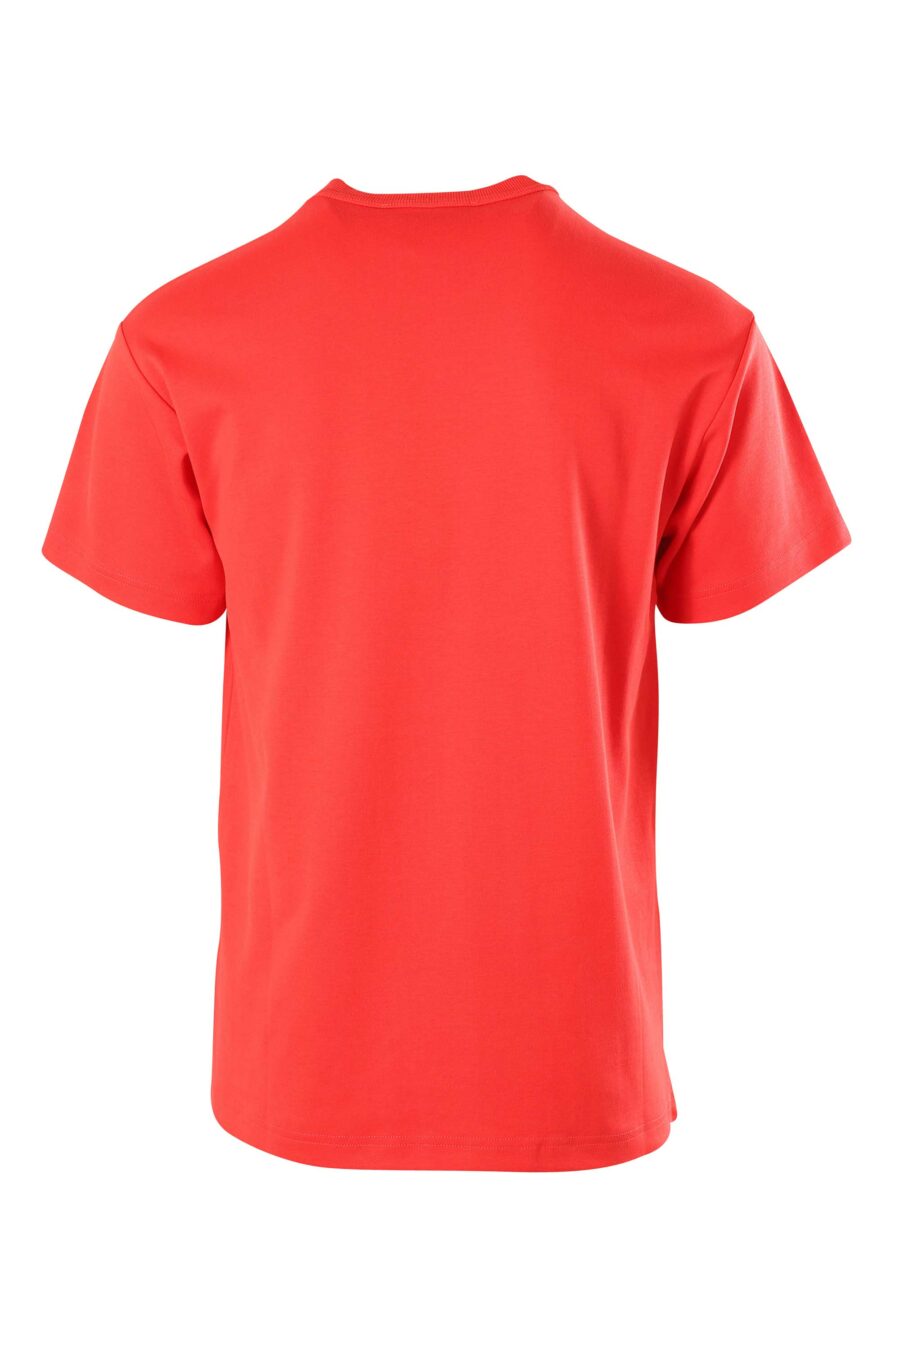 Camiseta roja doble logo entrelazado - 8052019234886 2